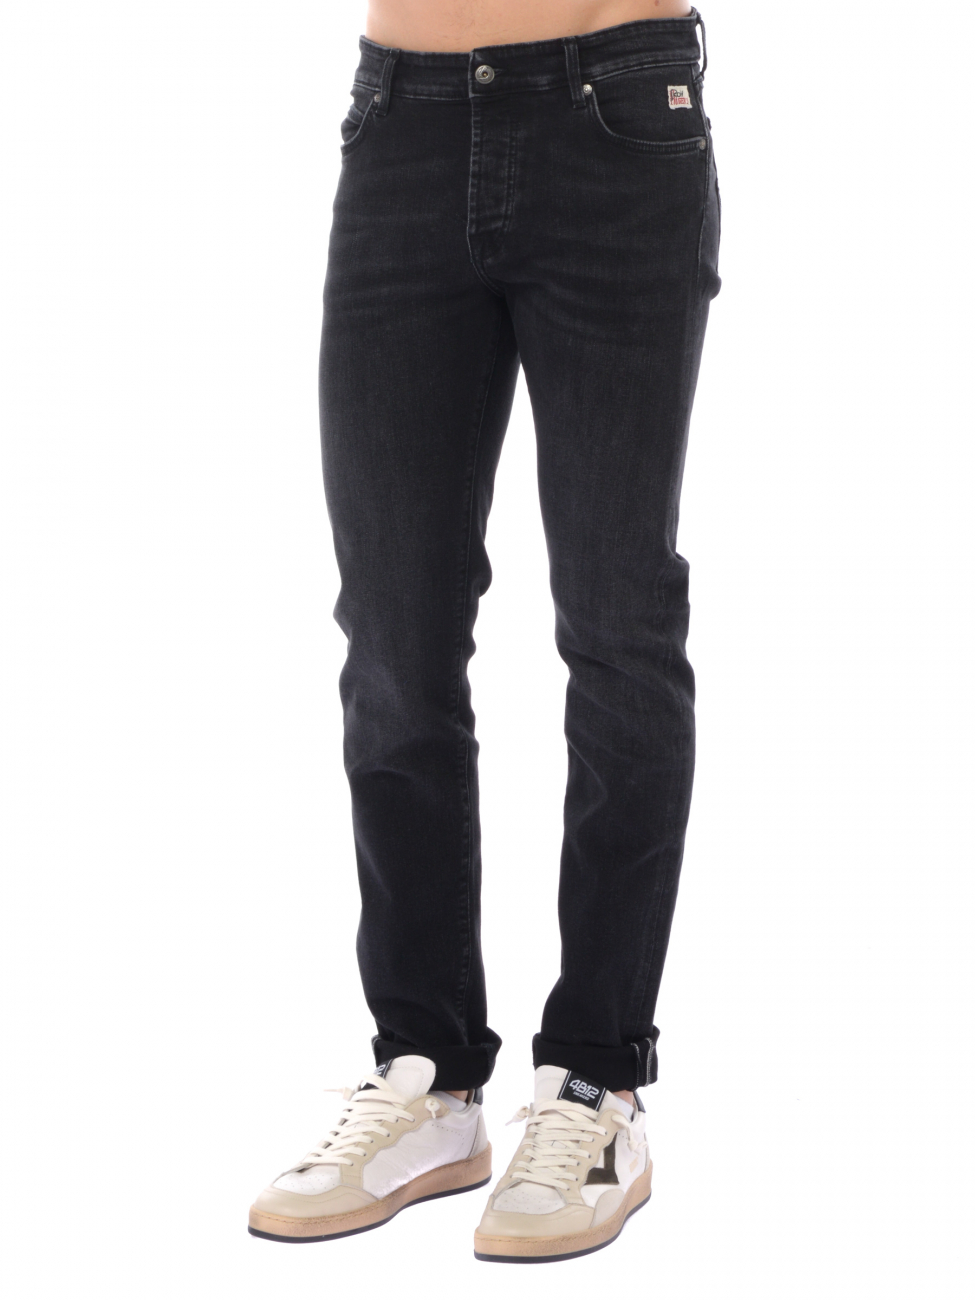 jeans da uomo Roy Roger's Black Denim Slim Fit